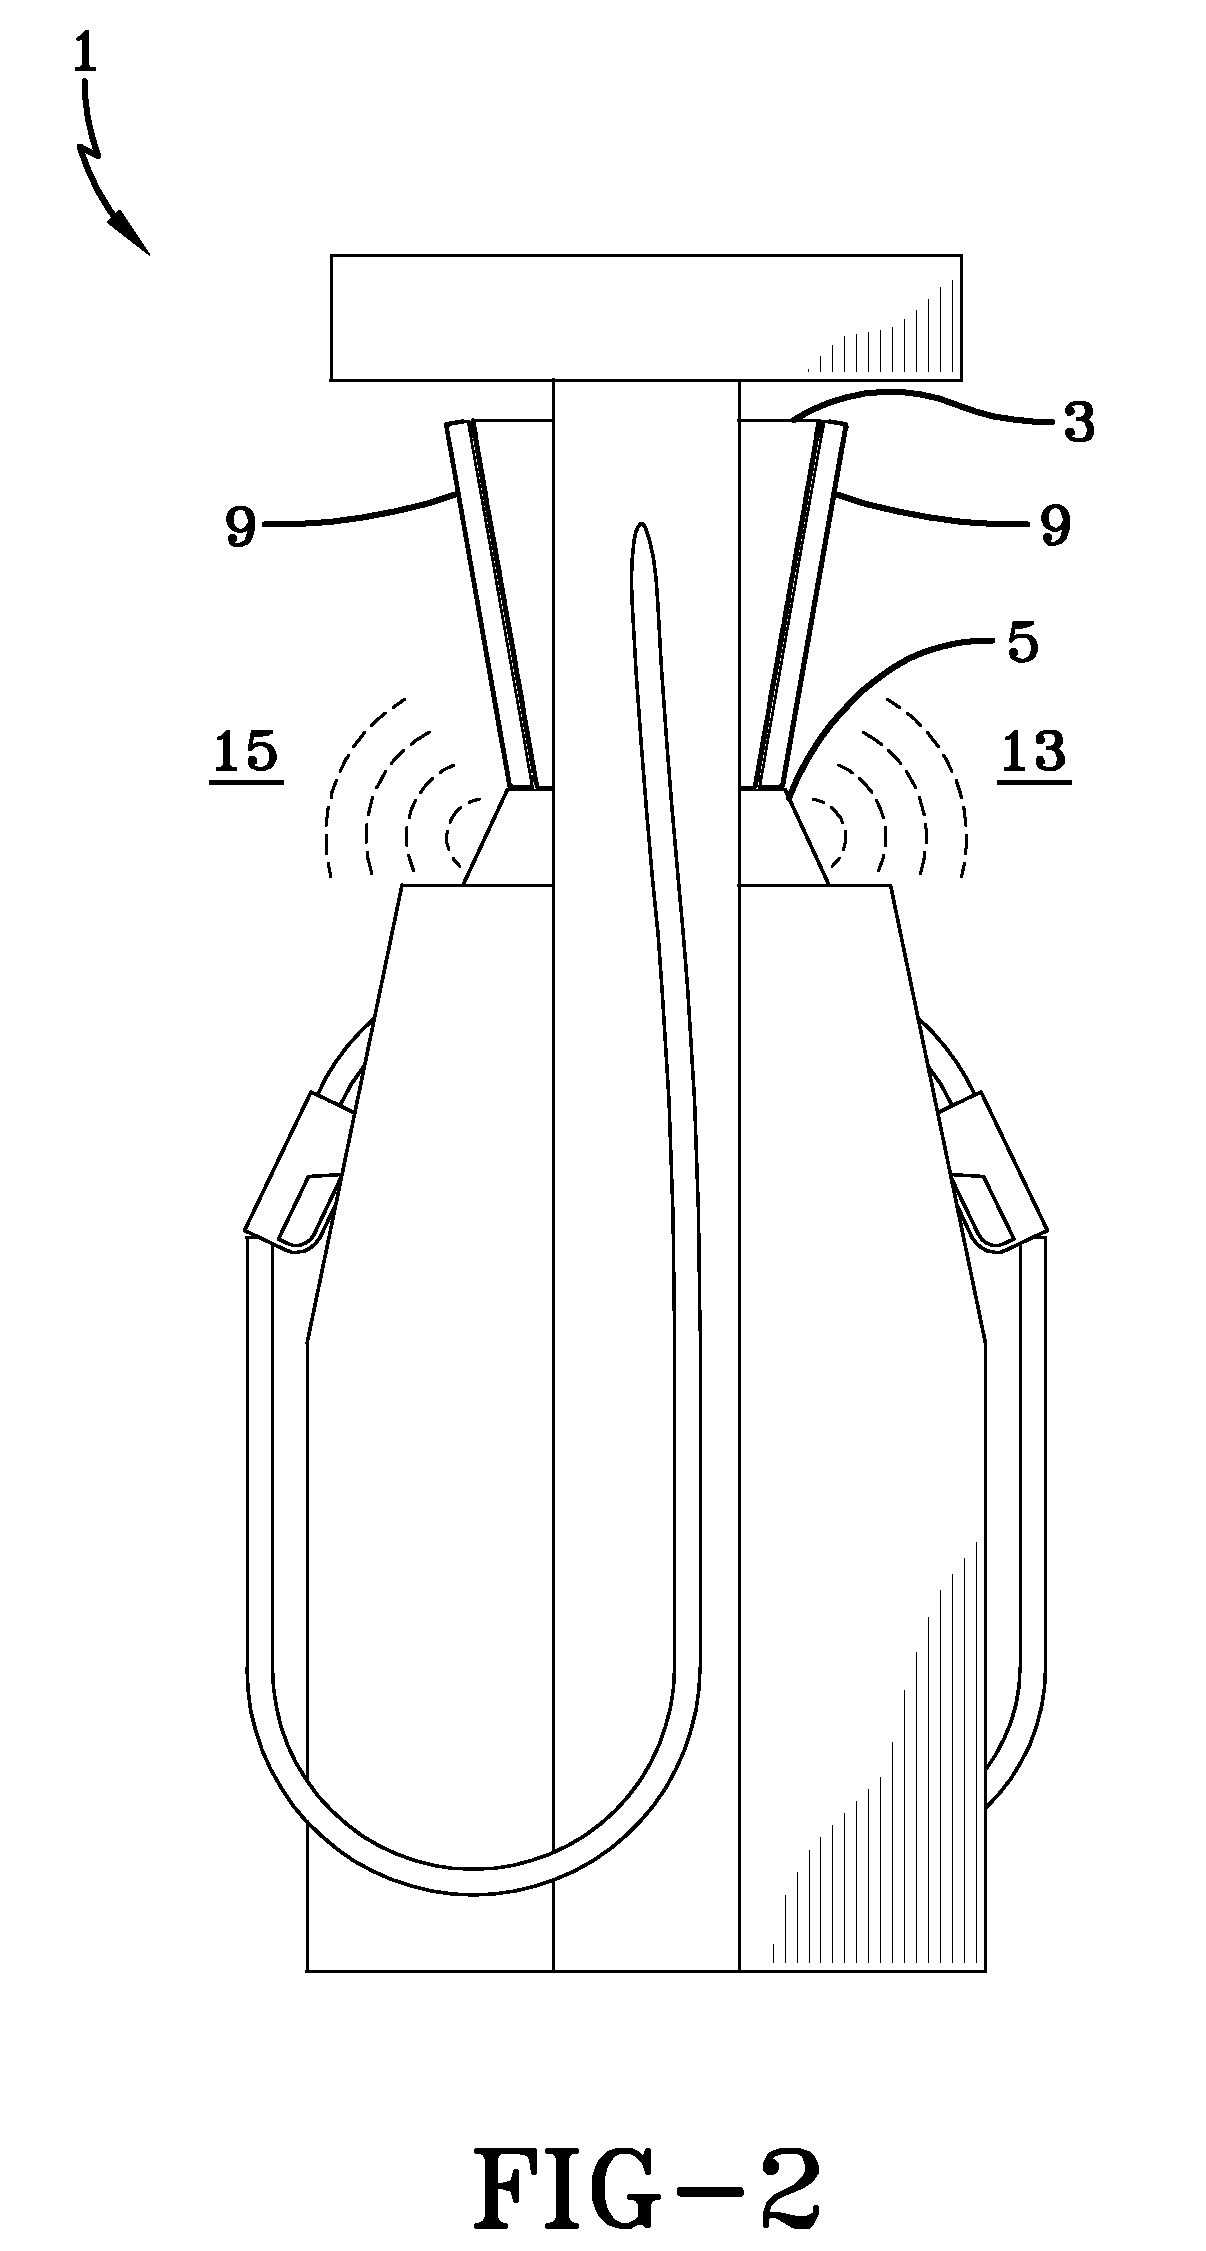 Speaker configuration